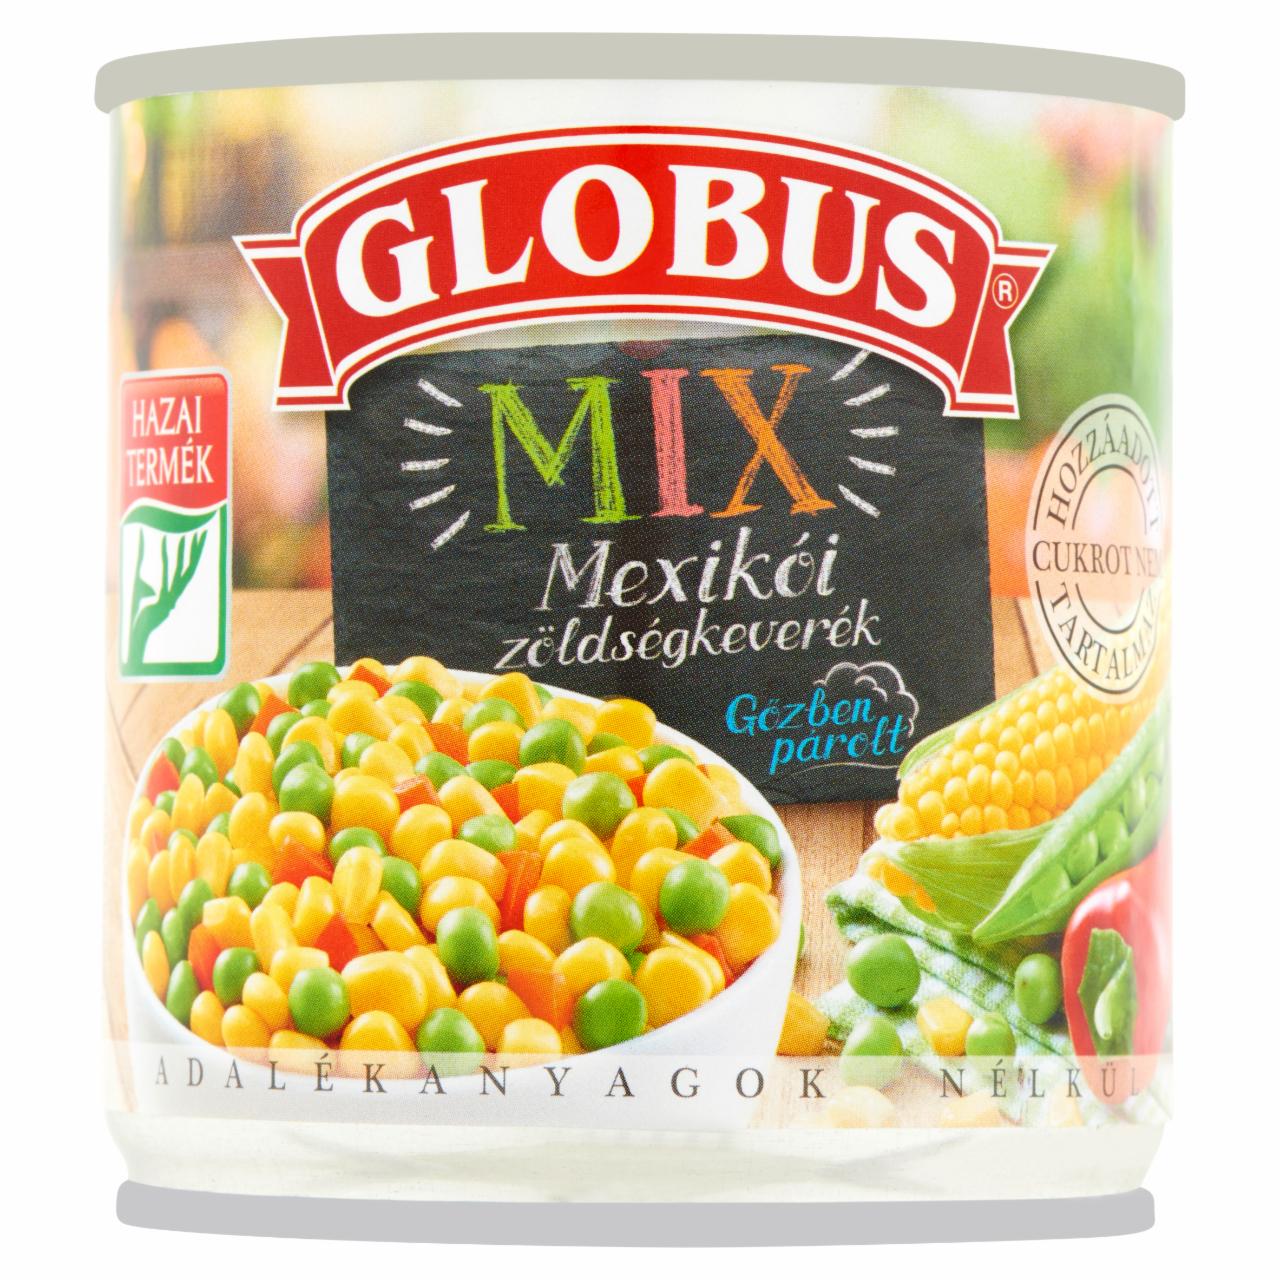 Képek - Globus Mix mexikói zöldségkeverék 150 g